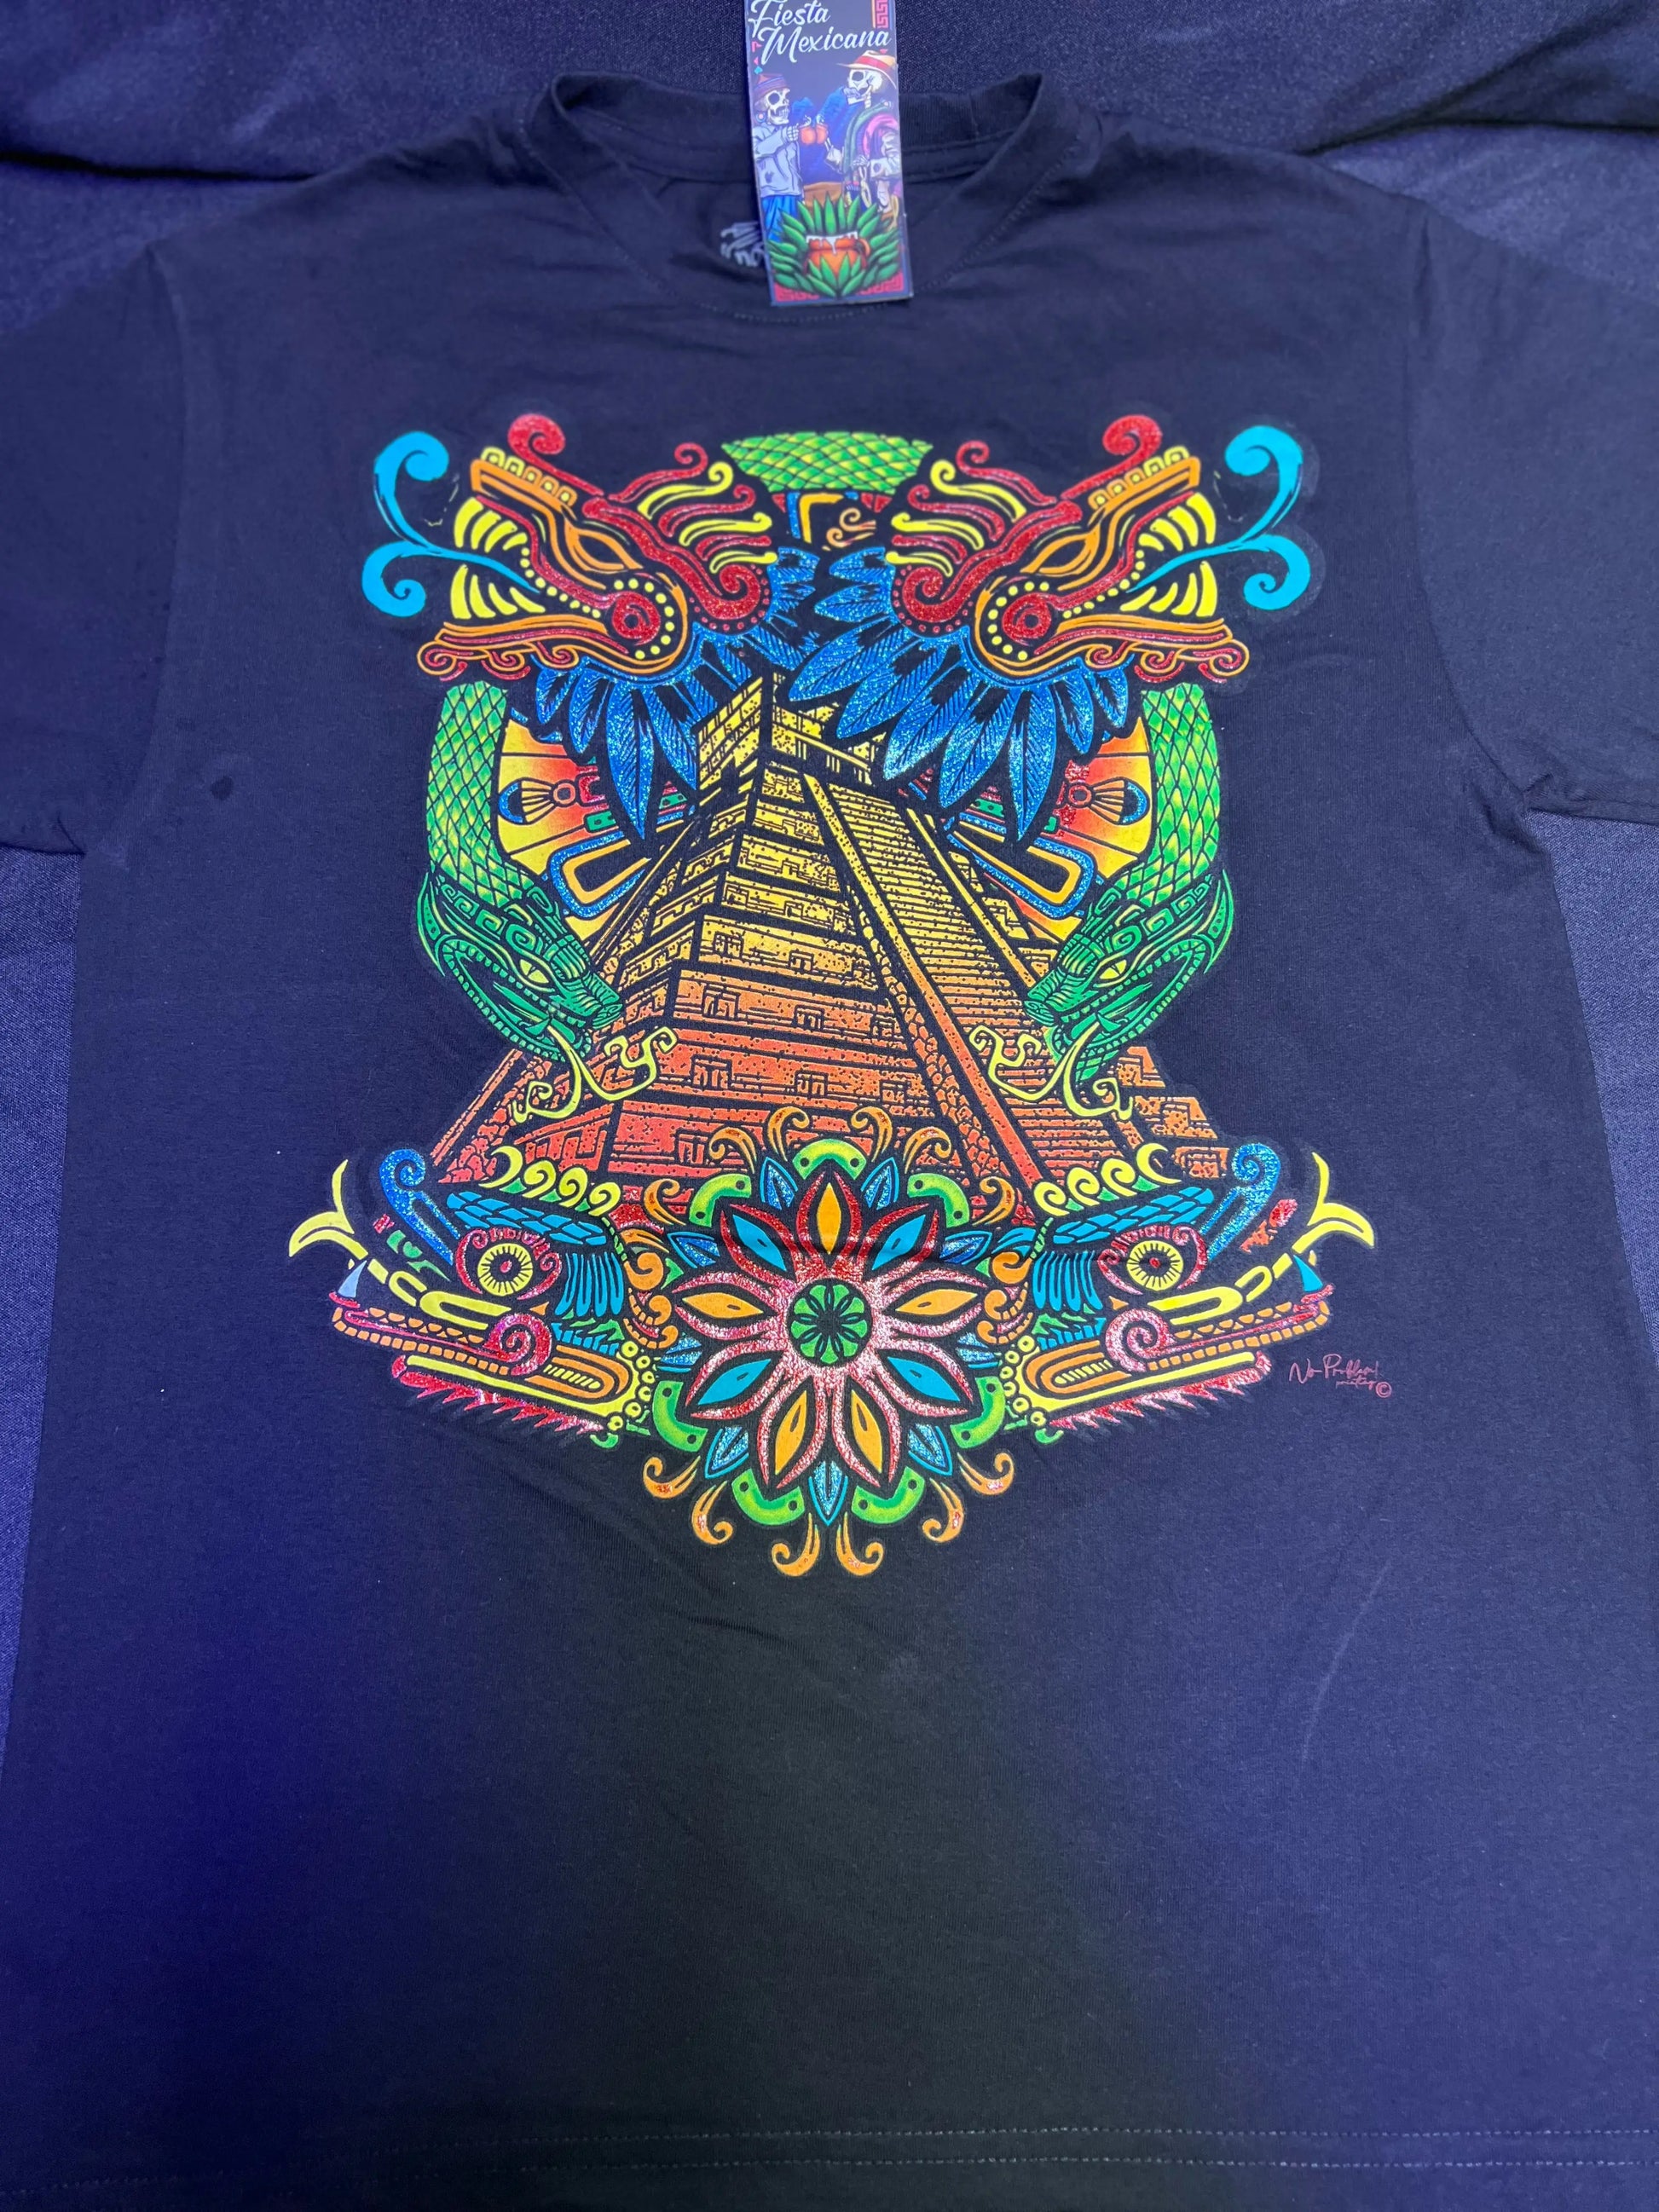 Quetzalcoatl - Alebrijes T-shits